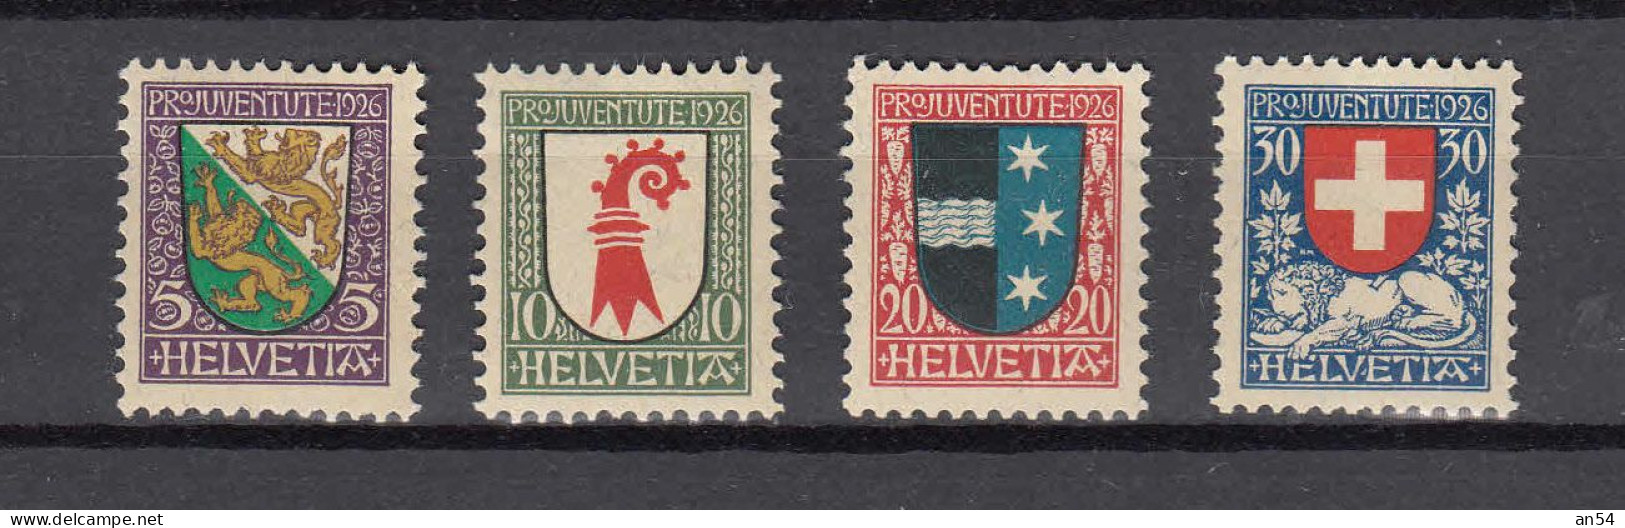 PJ   1926     N° J37 à J40   NEUFS**    COTE 10.00        CATALOGUE SBK - Unused Stamps